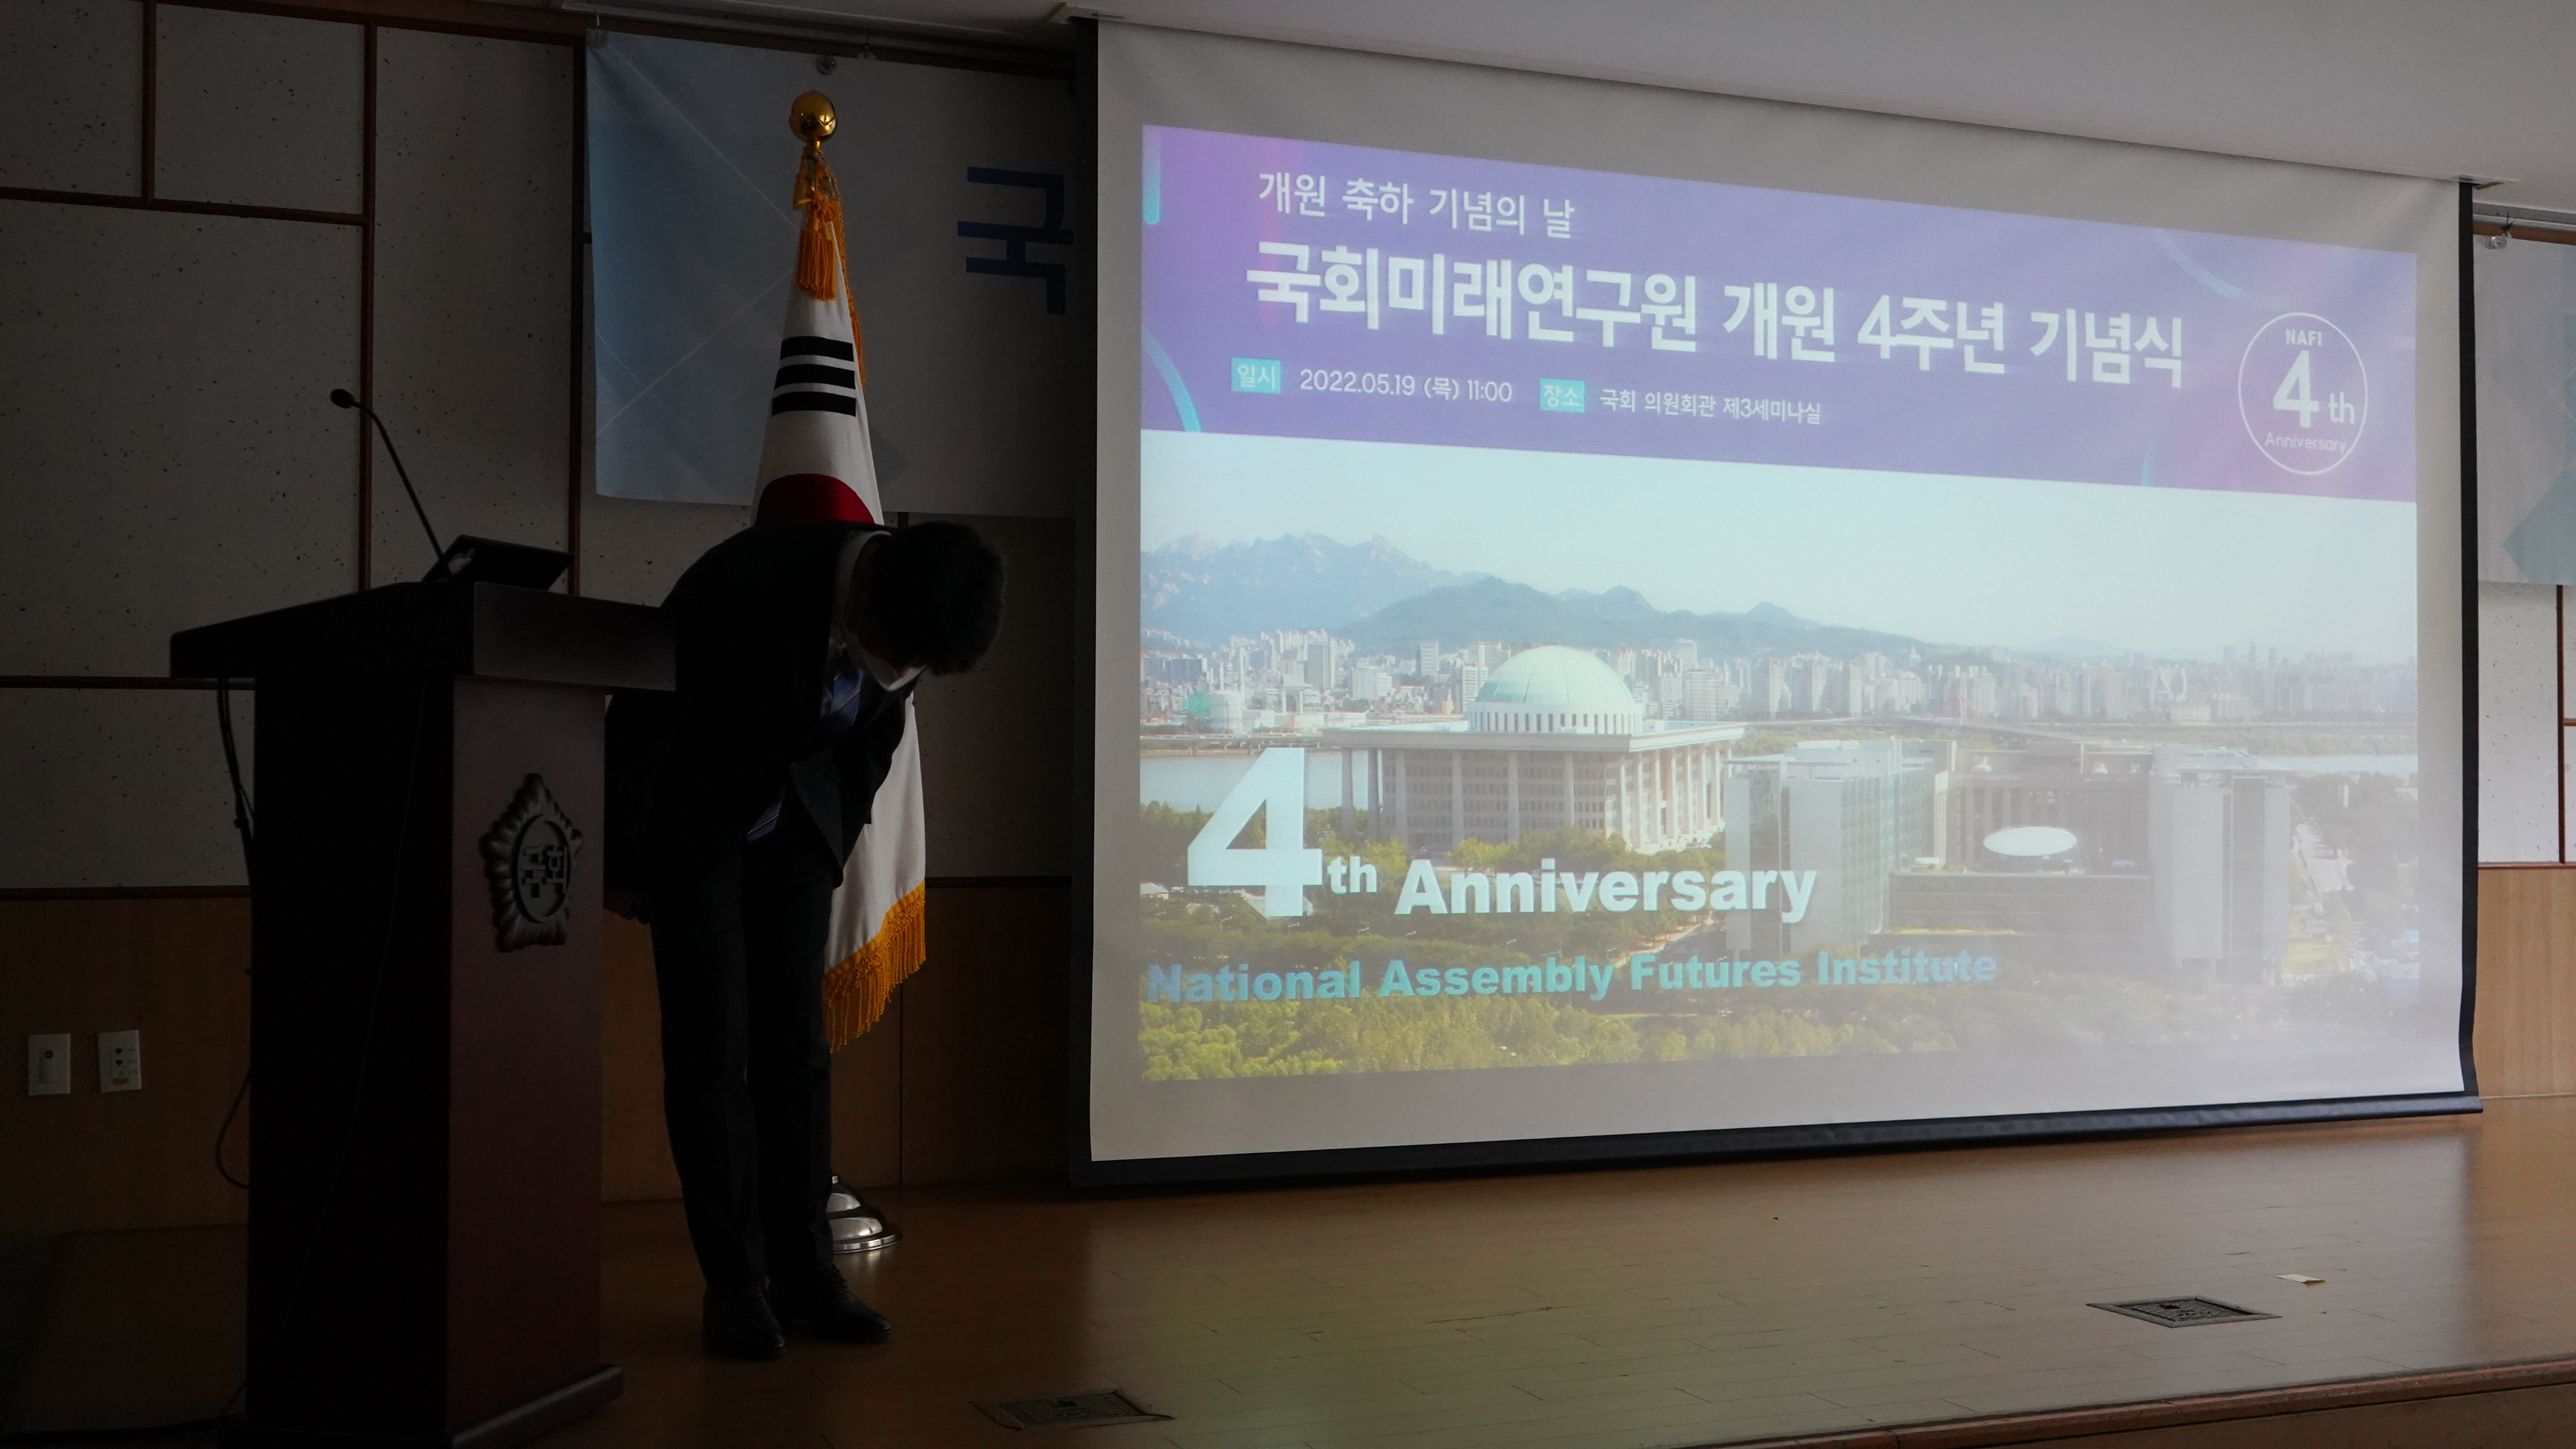 [05.19] 국회미래연구원, 개원 4주년 기념식 개최 3